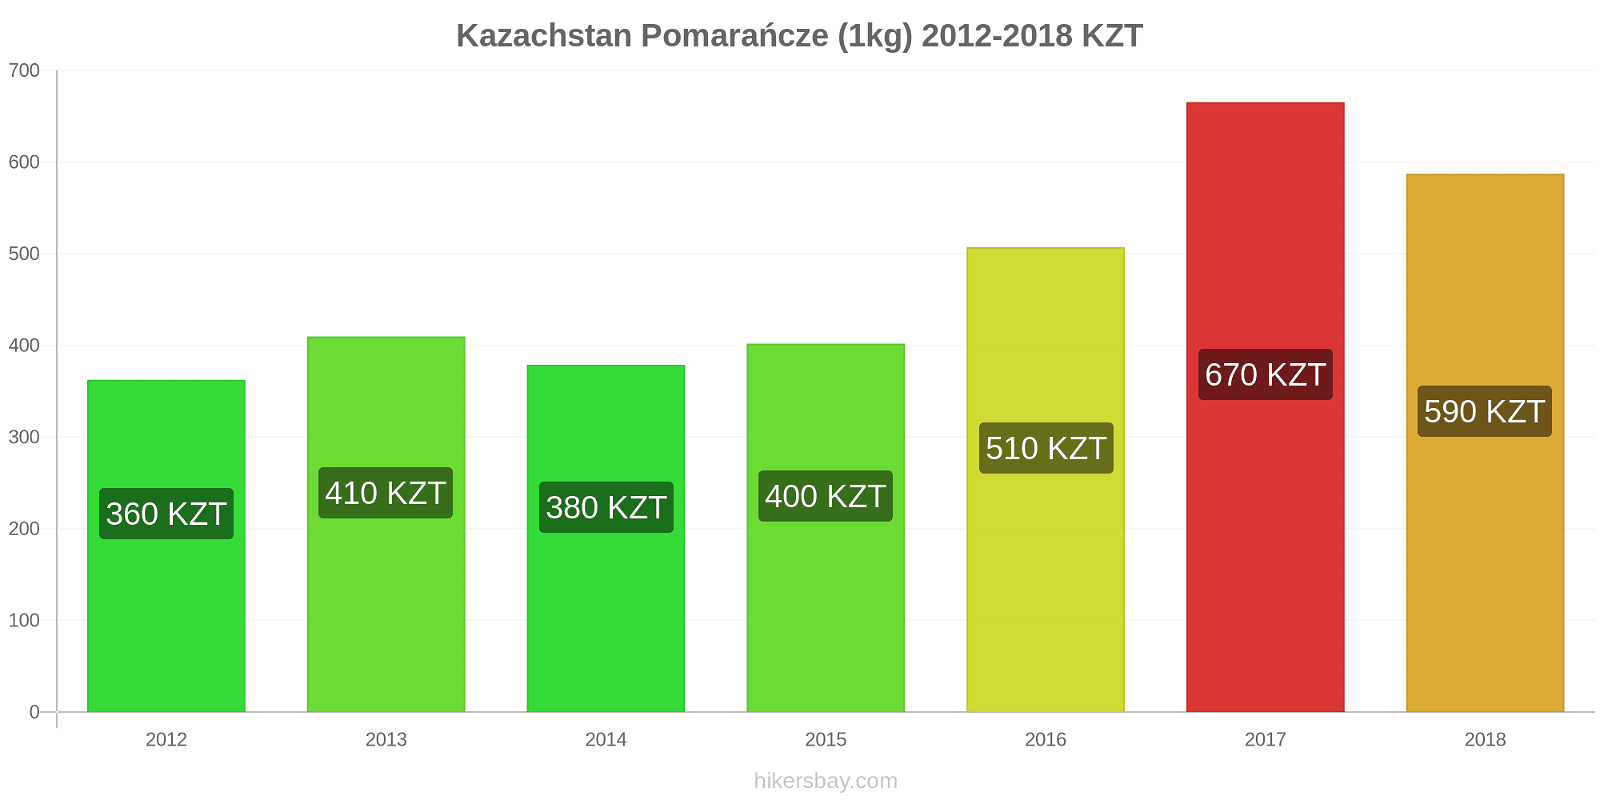 Kazachstan zmiany cen Pomarańcze (1kg) hikersbay.com